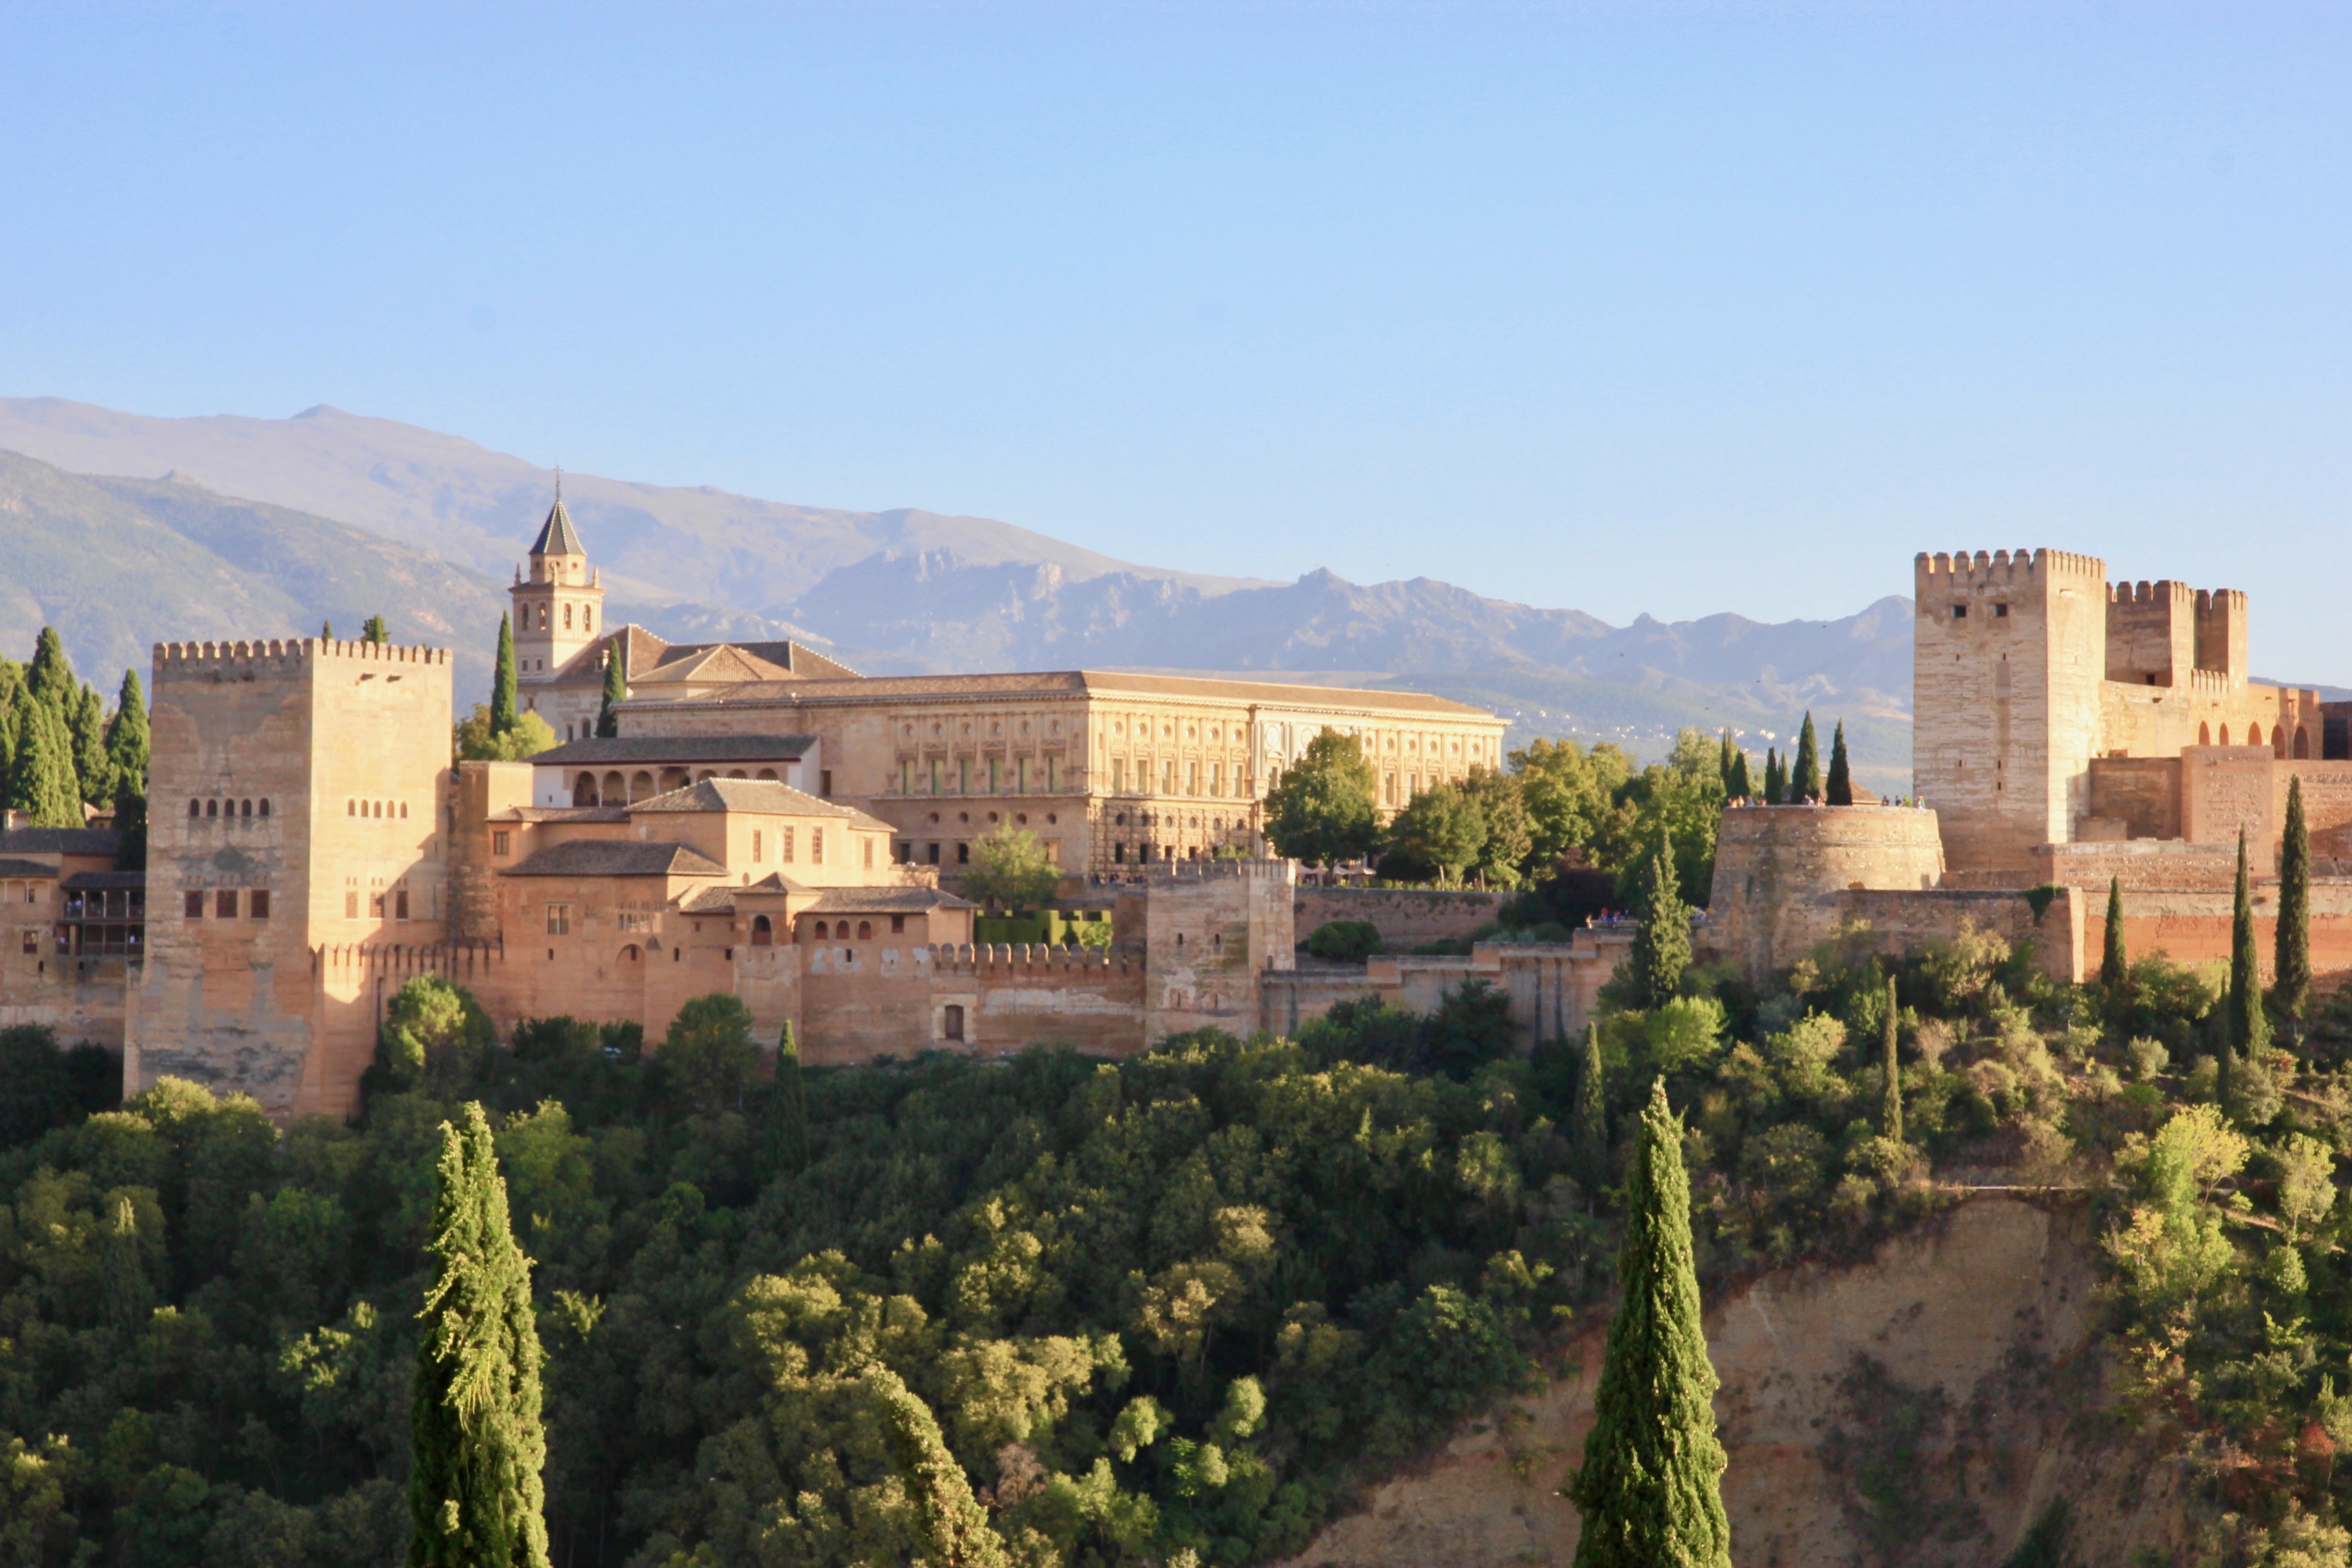 Granada in due giorni